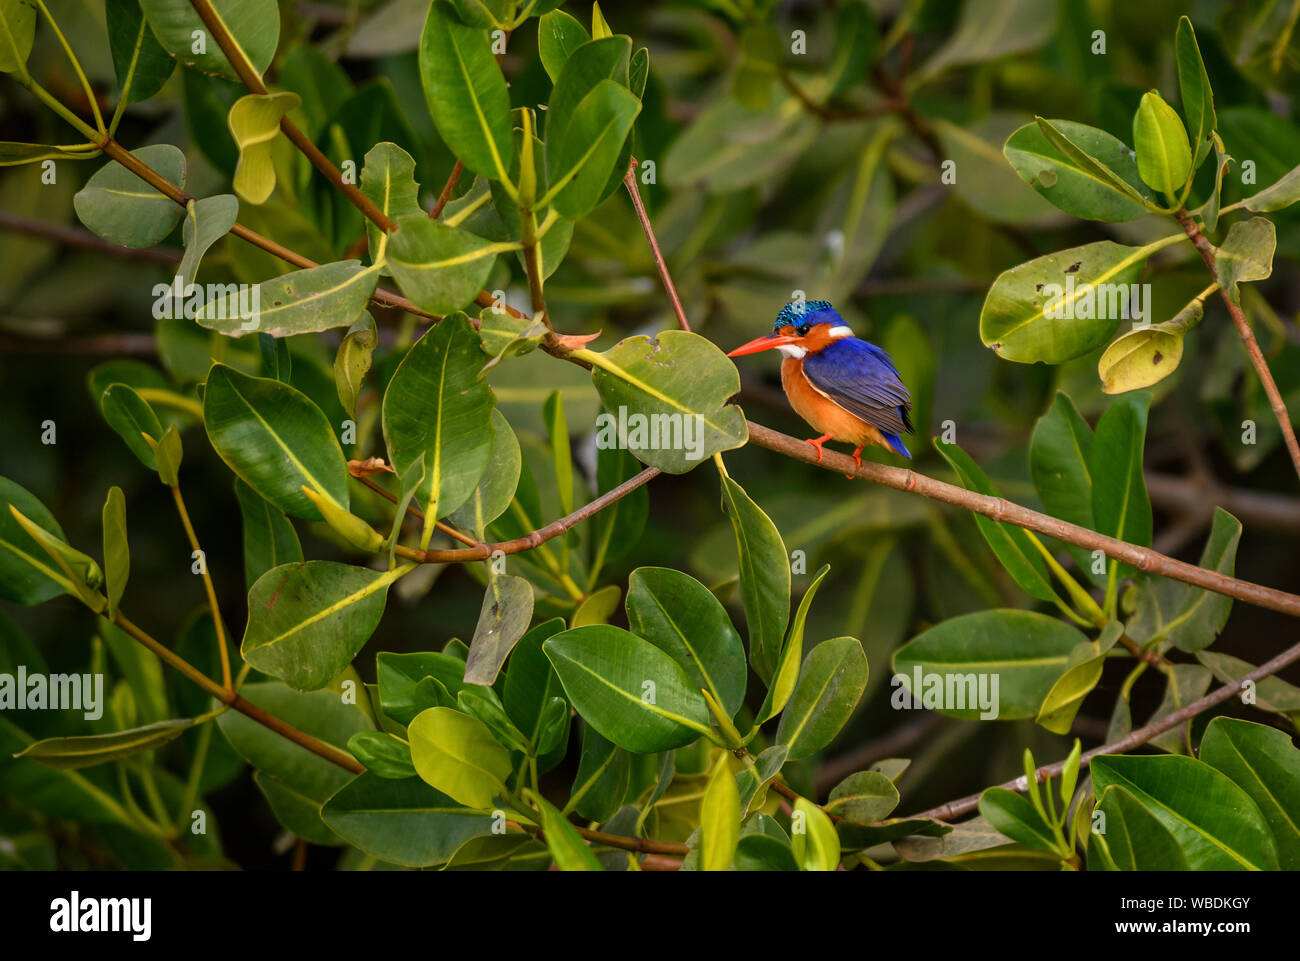 Malaquita Martín Pescador - Alcedo cristata, hermoso pequeño río azul y naranja kingfisher del oeste africano de ríos y manglares, La someone, Senegal. Foto de stock